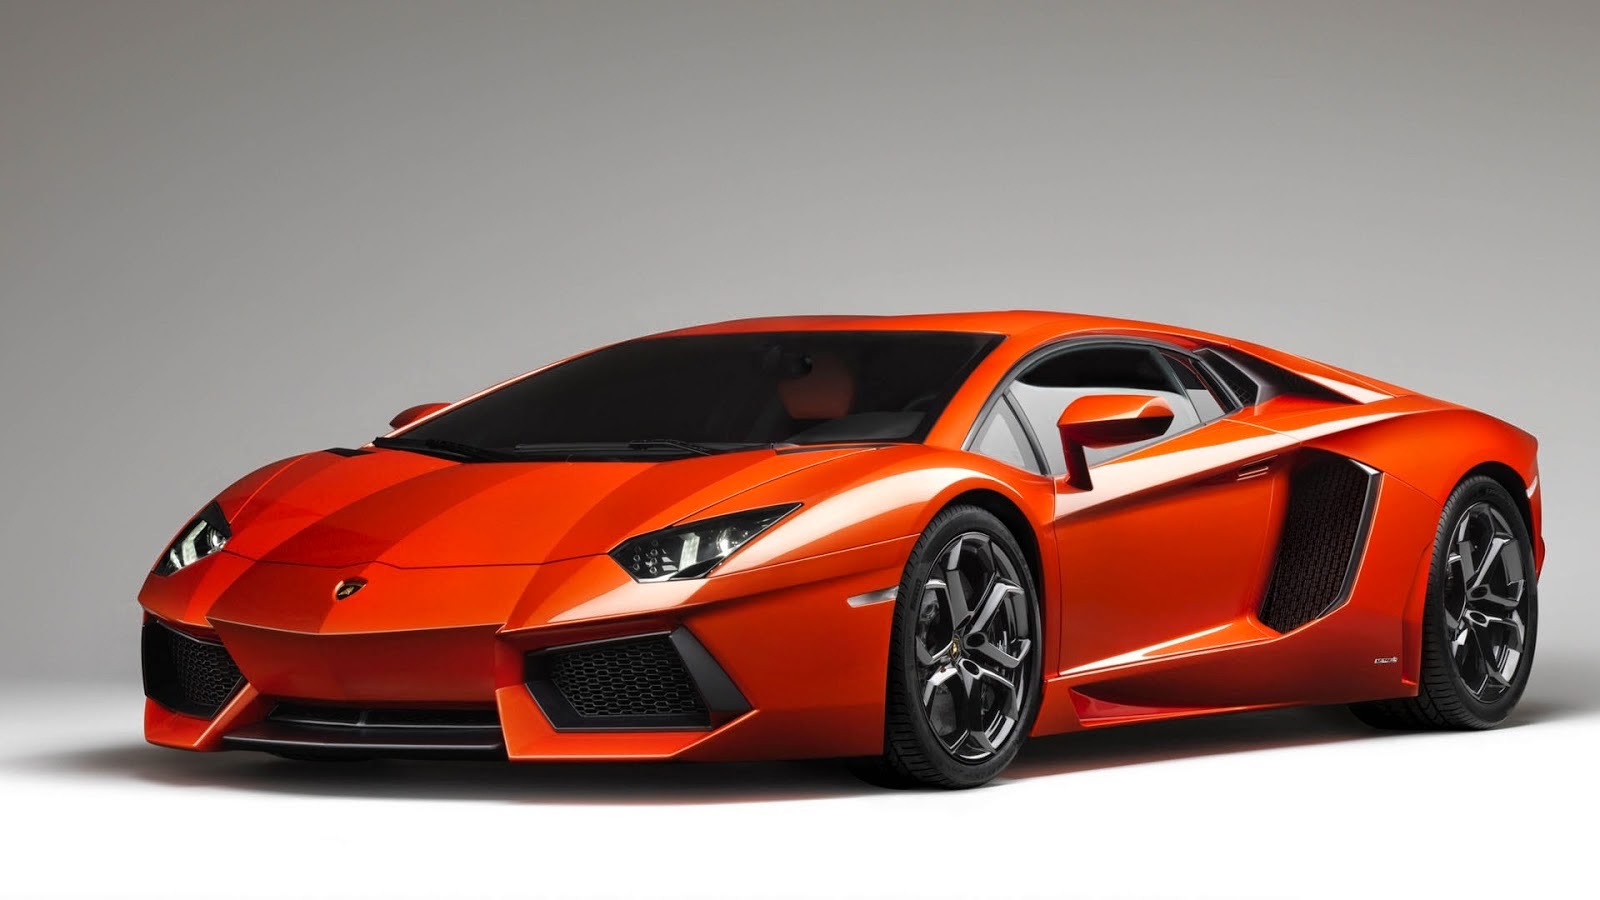 Kumpulan Foto Mobil Lamborghini Super Keren Terbaru Modif Motor